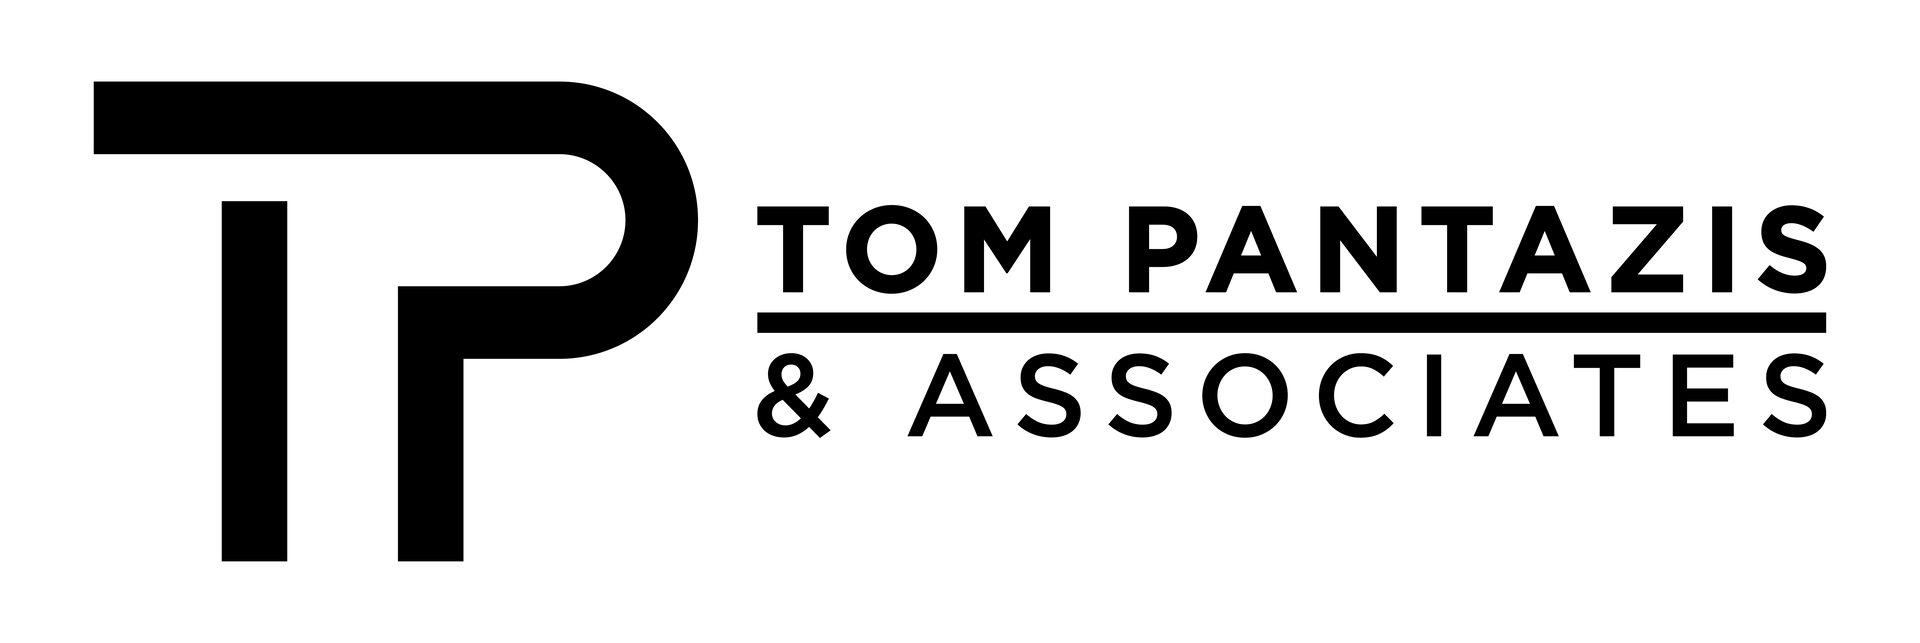 Tom Pantazis white logo